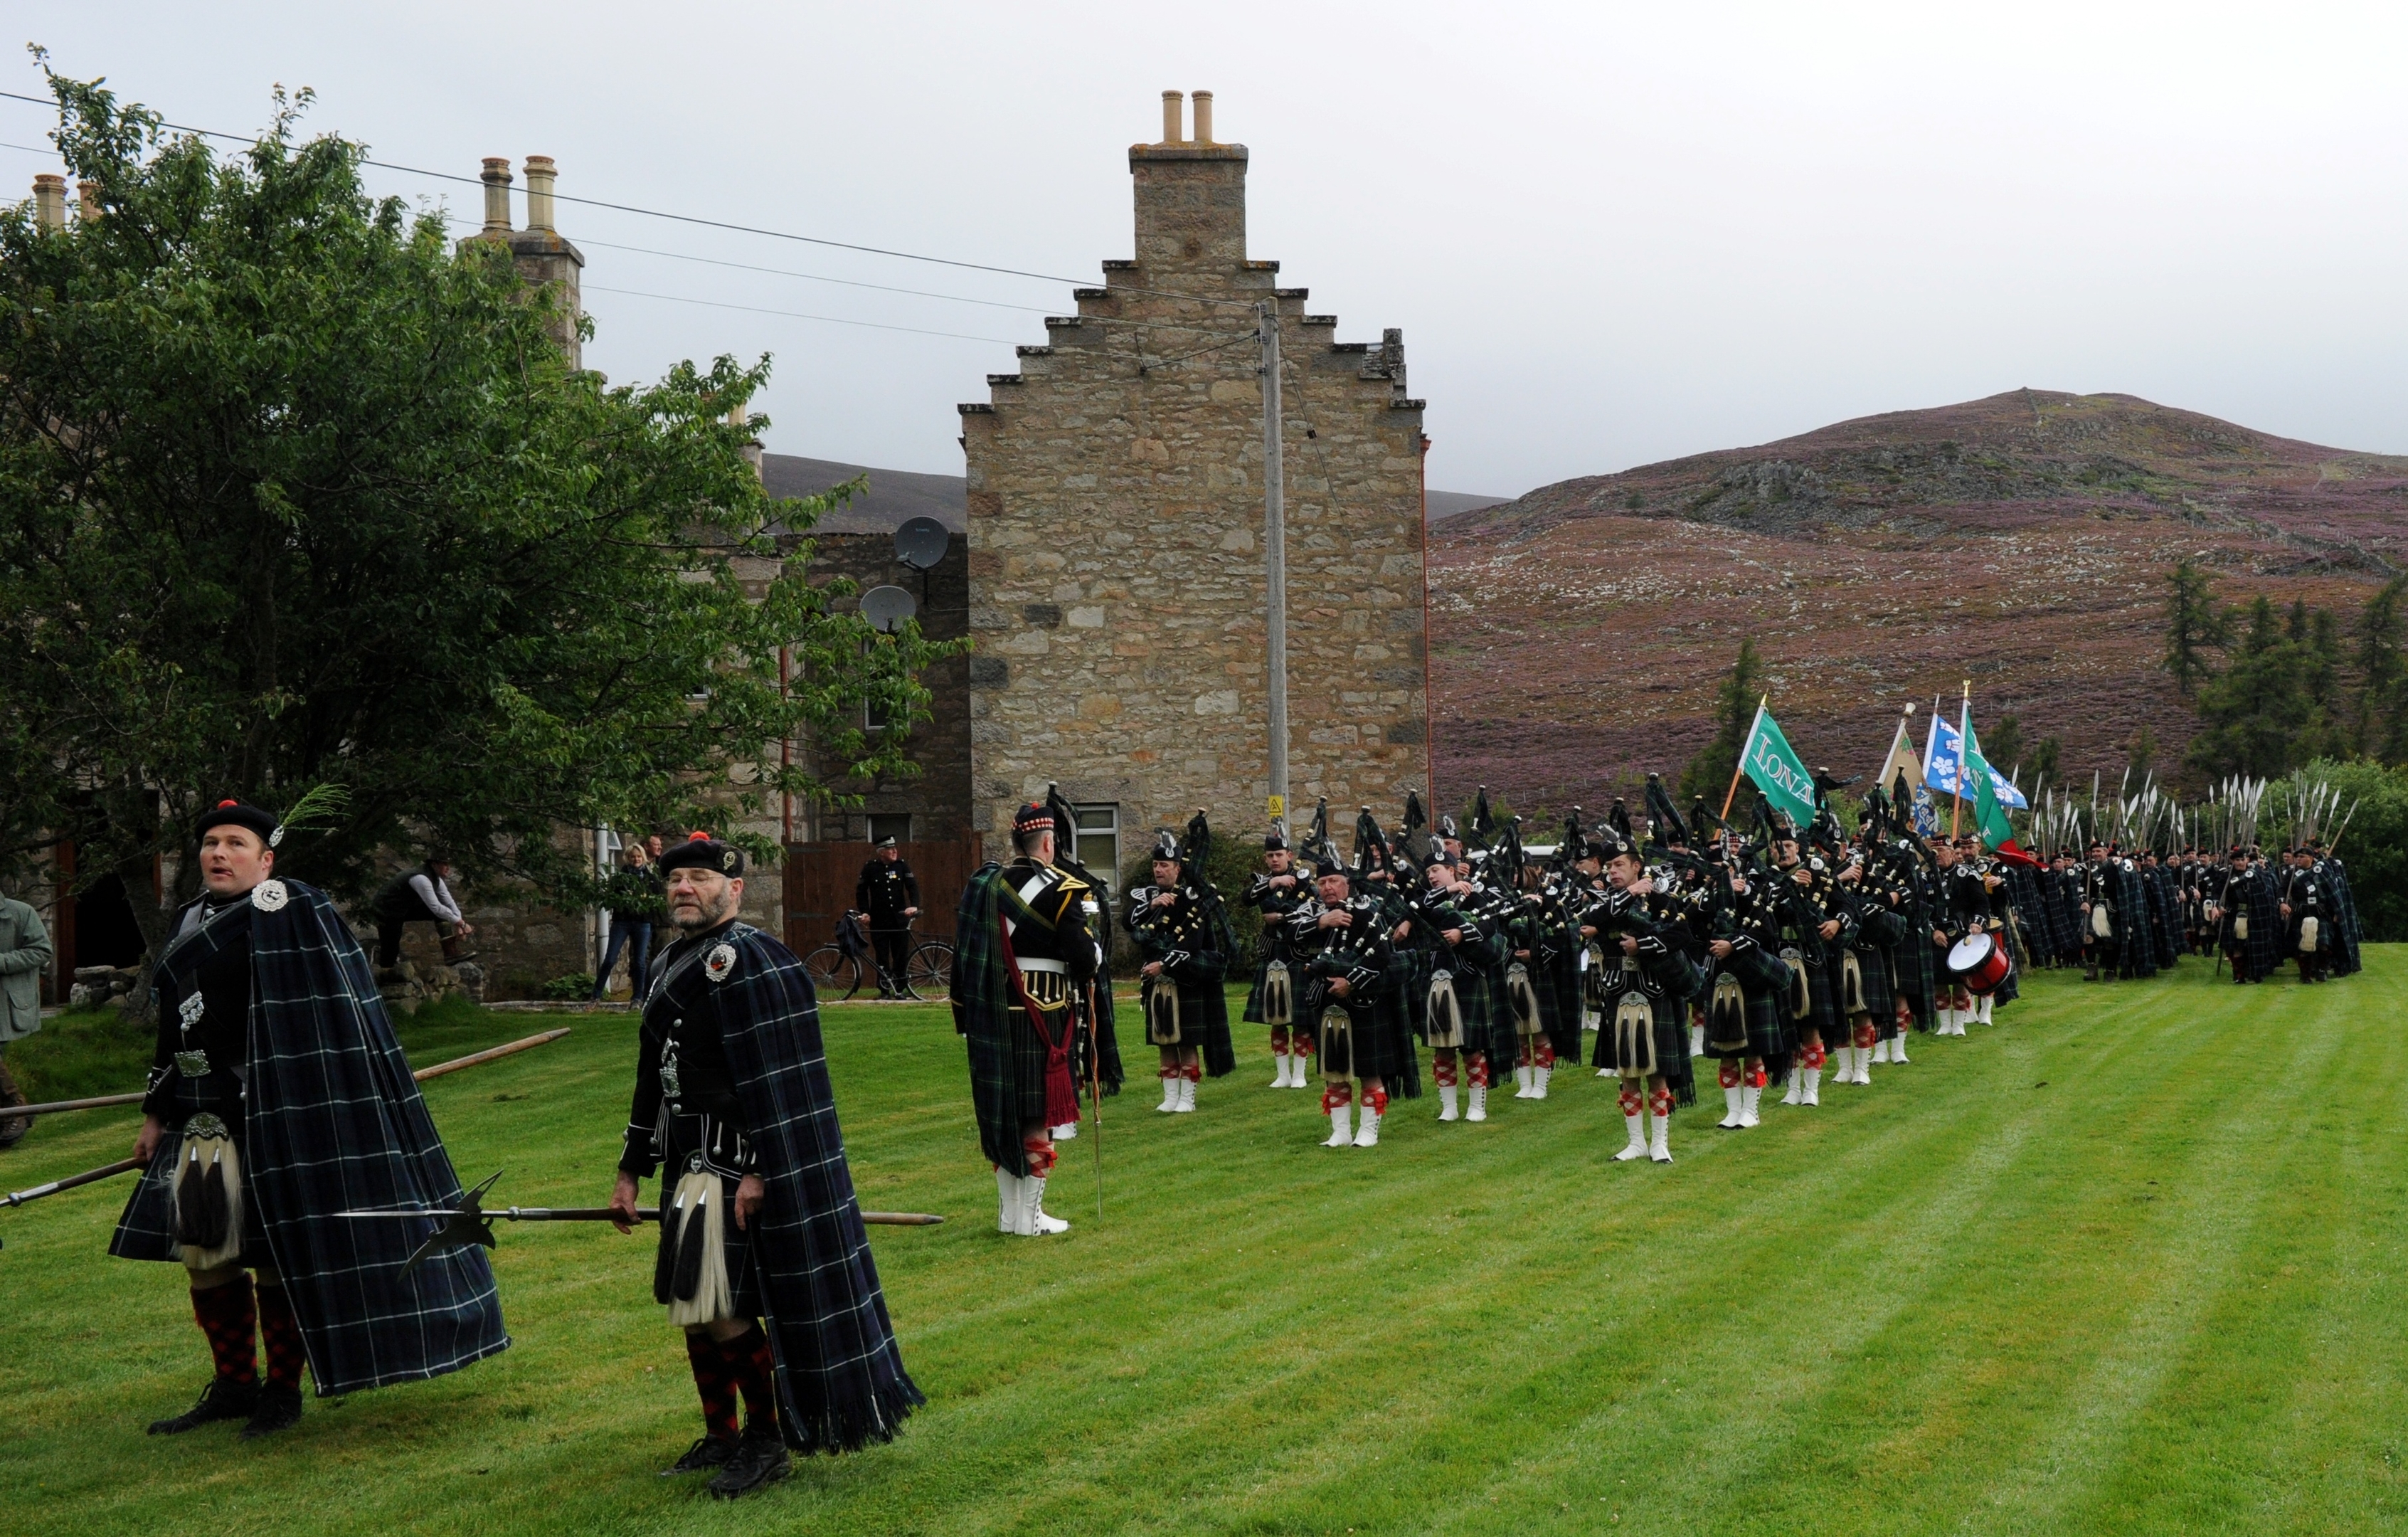 A long walk for the Lonach Highlanders